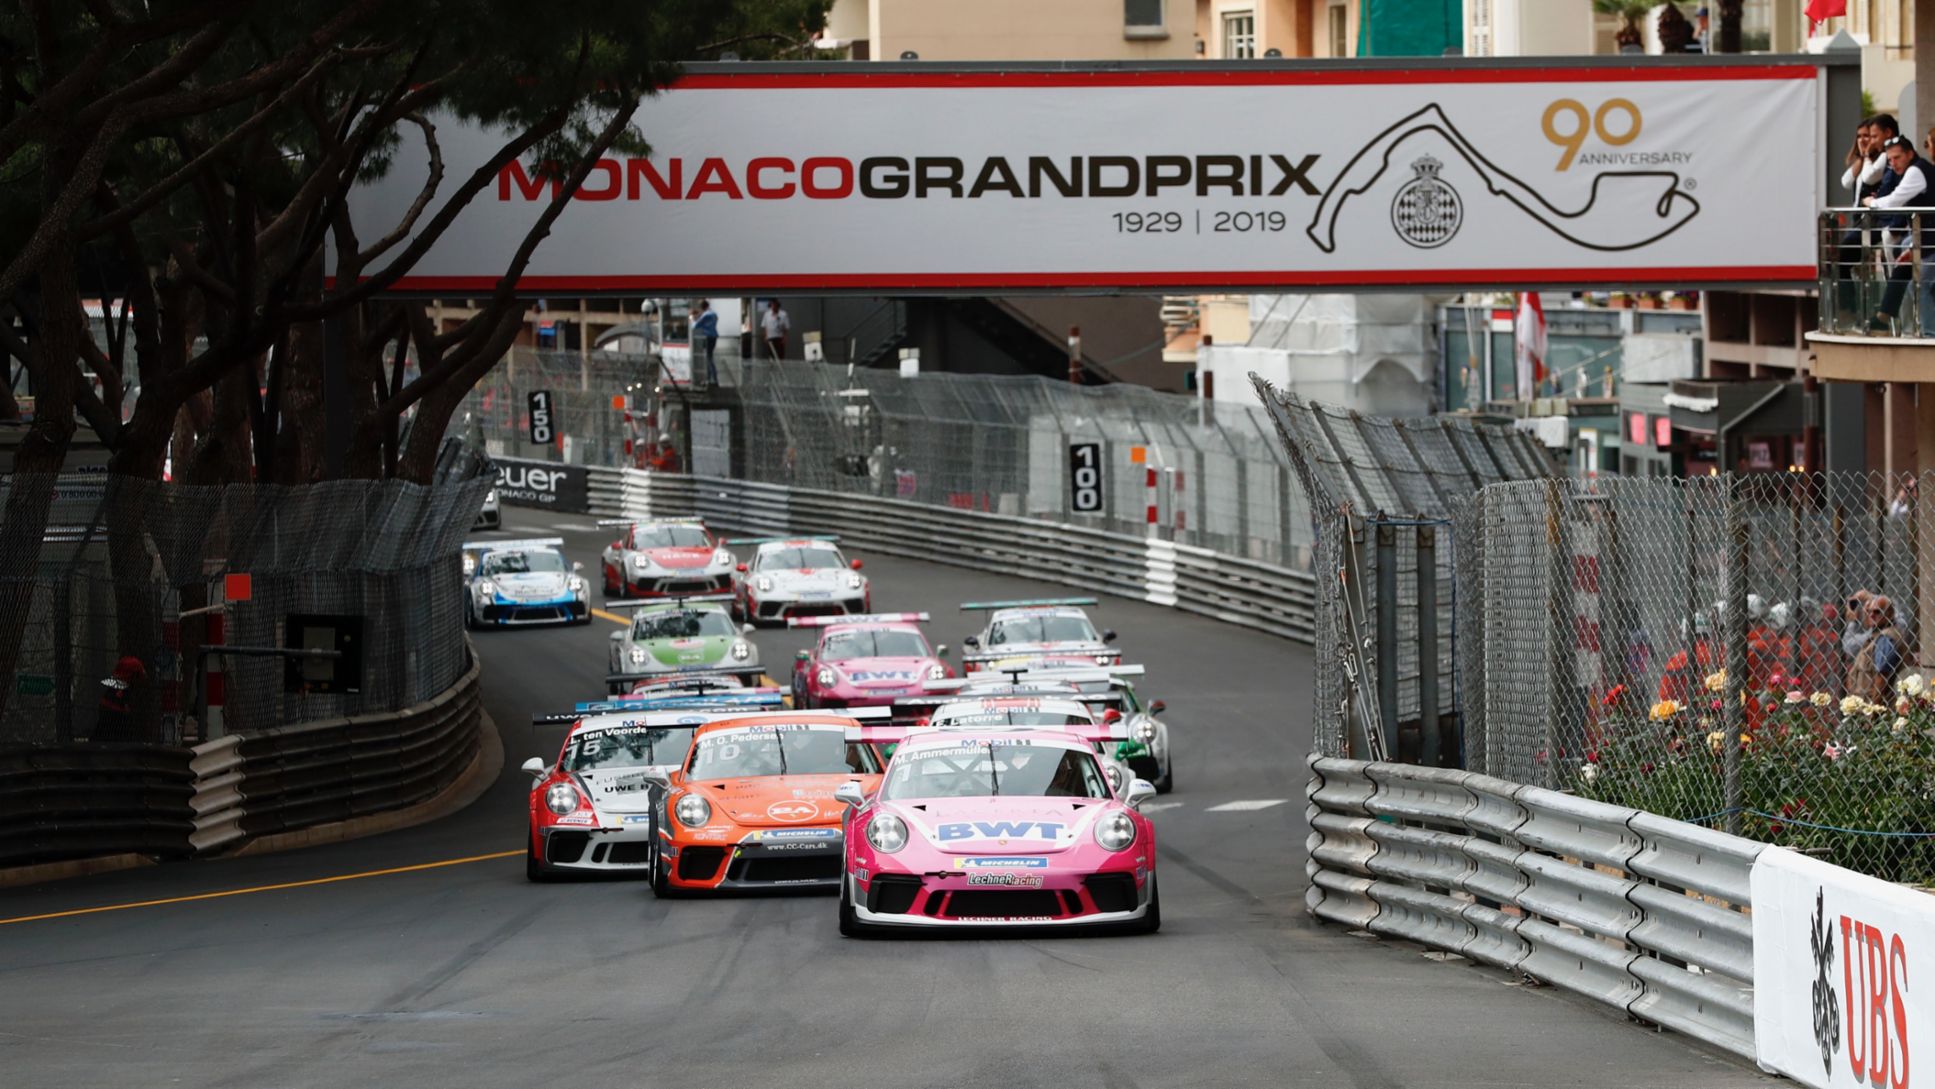 911 GT3 Cup, Porsche Mobil 1 Supercup, race, run 2, Monte Carlo/Monaco, 2019, Porsche AG